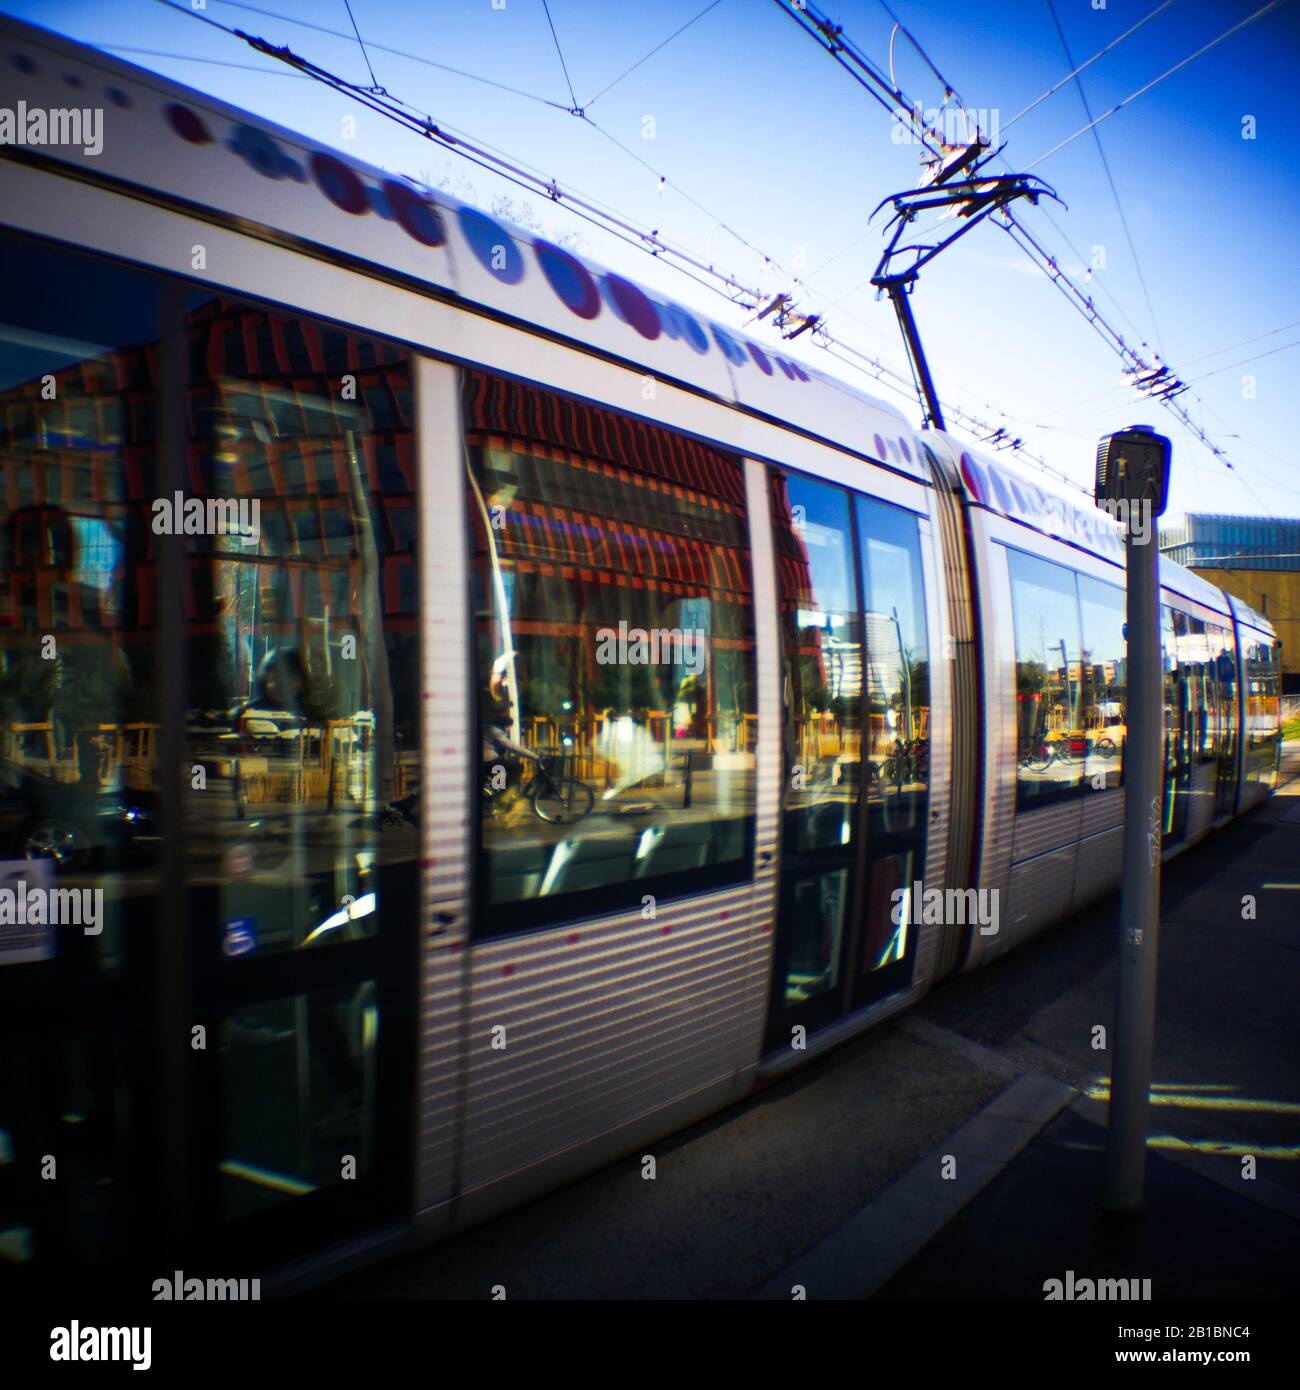 T4 line tram train, La Part-Dieu, Lyon, France Stock Photo